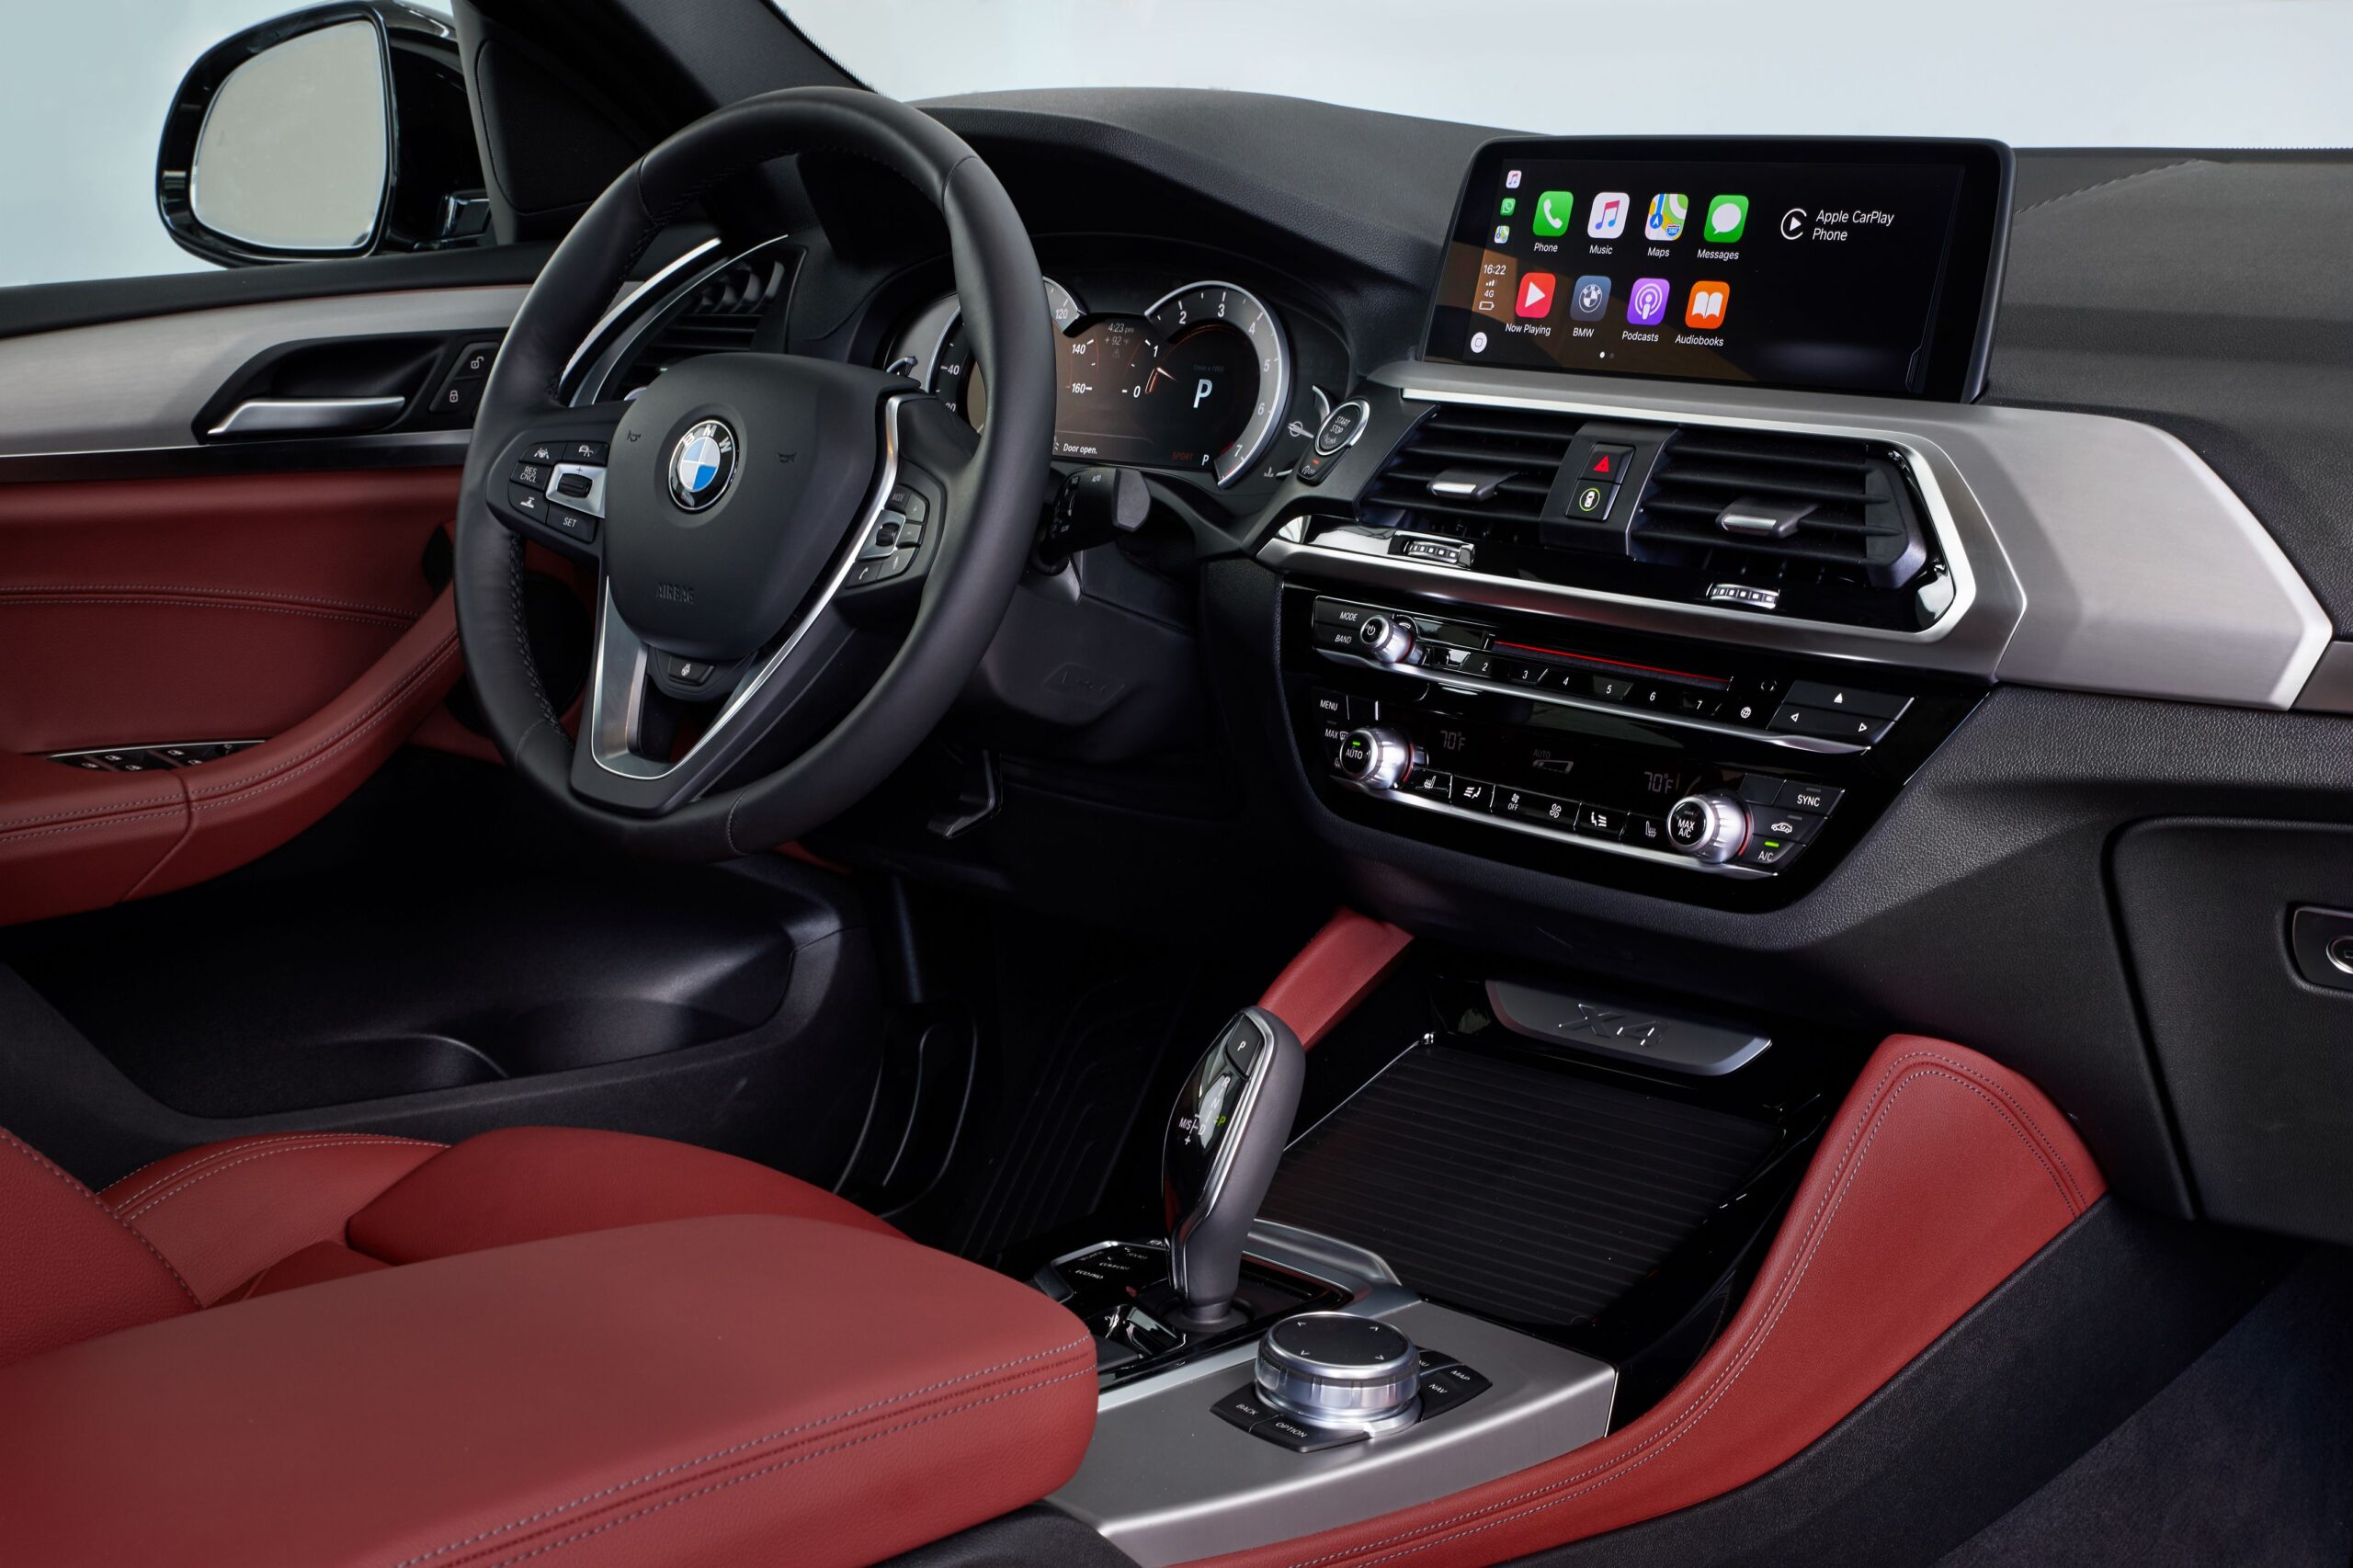 Ảnh xe BMW X4 đẹp nổi bật Full HD 1